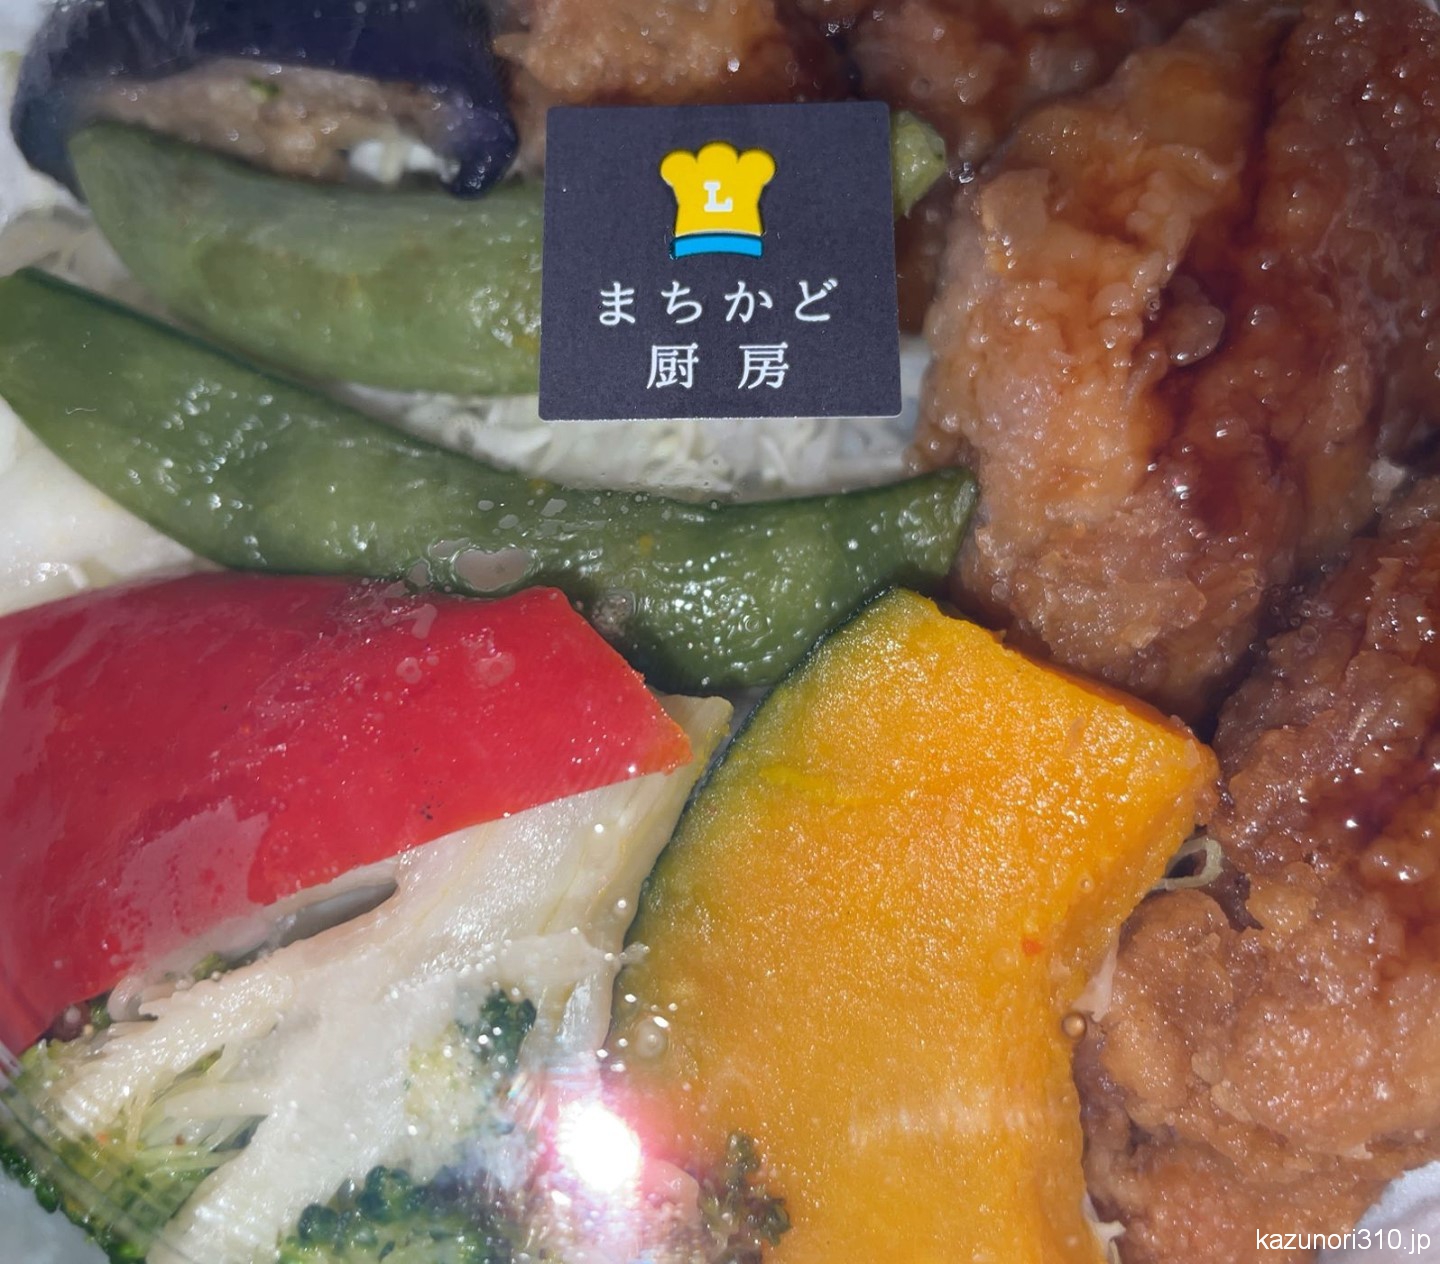 #揚げ鶏と南蛮ソース弁当 #5種野菜の彩り #まちかど厨房 #ローソン